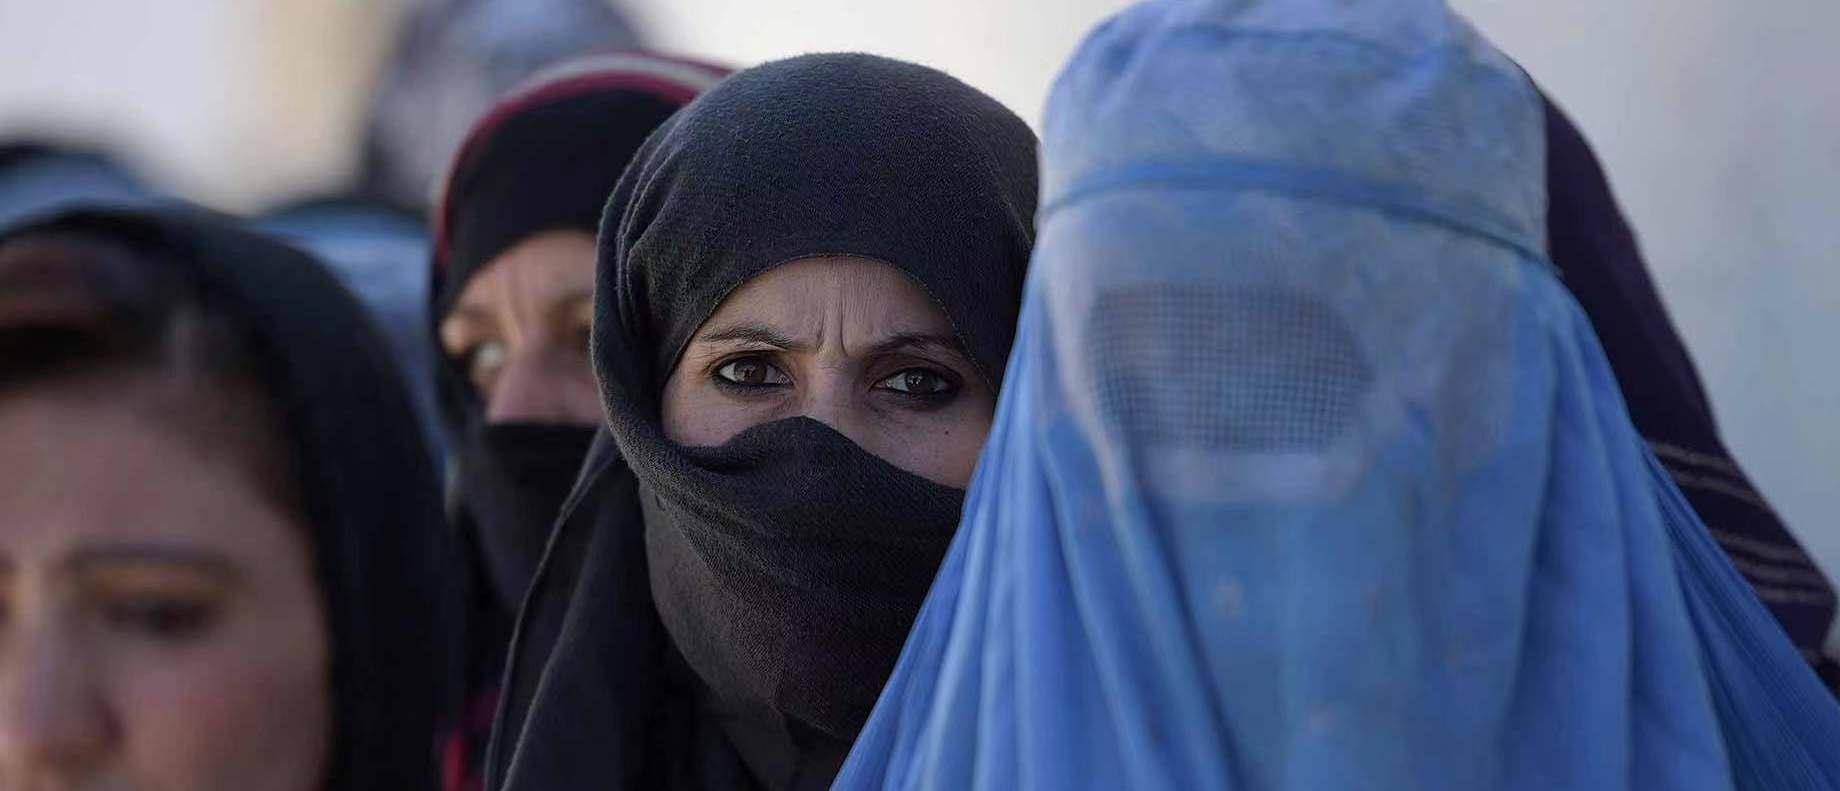 阿富汗女人有多惨?为了生存只能放弃尊严,过着寄人篱下的生活